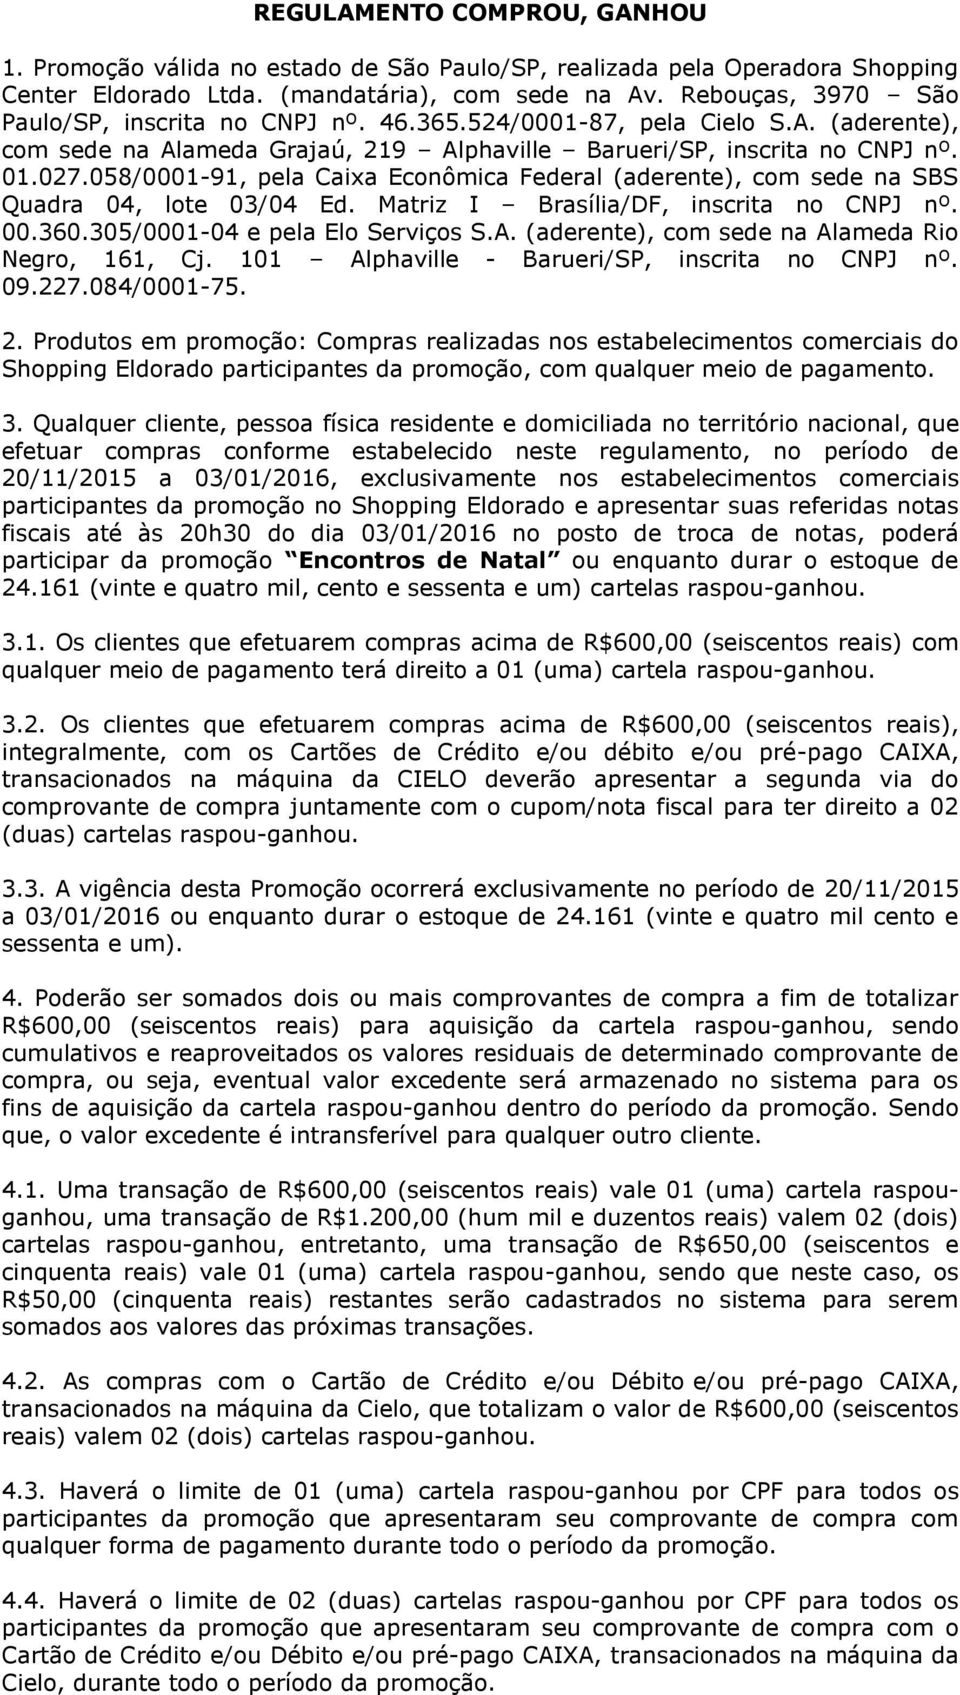 058/000-9, pela Caixa Econômica Federal (aderente), com sede na SBS Quadra 04, lote 03/04 Ed. Matriz I Brasília/DF, inscrita no CNPJ nº. 00.360.305/000-04 e pela Elo Serviços S.A.